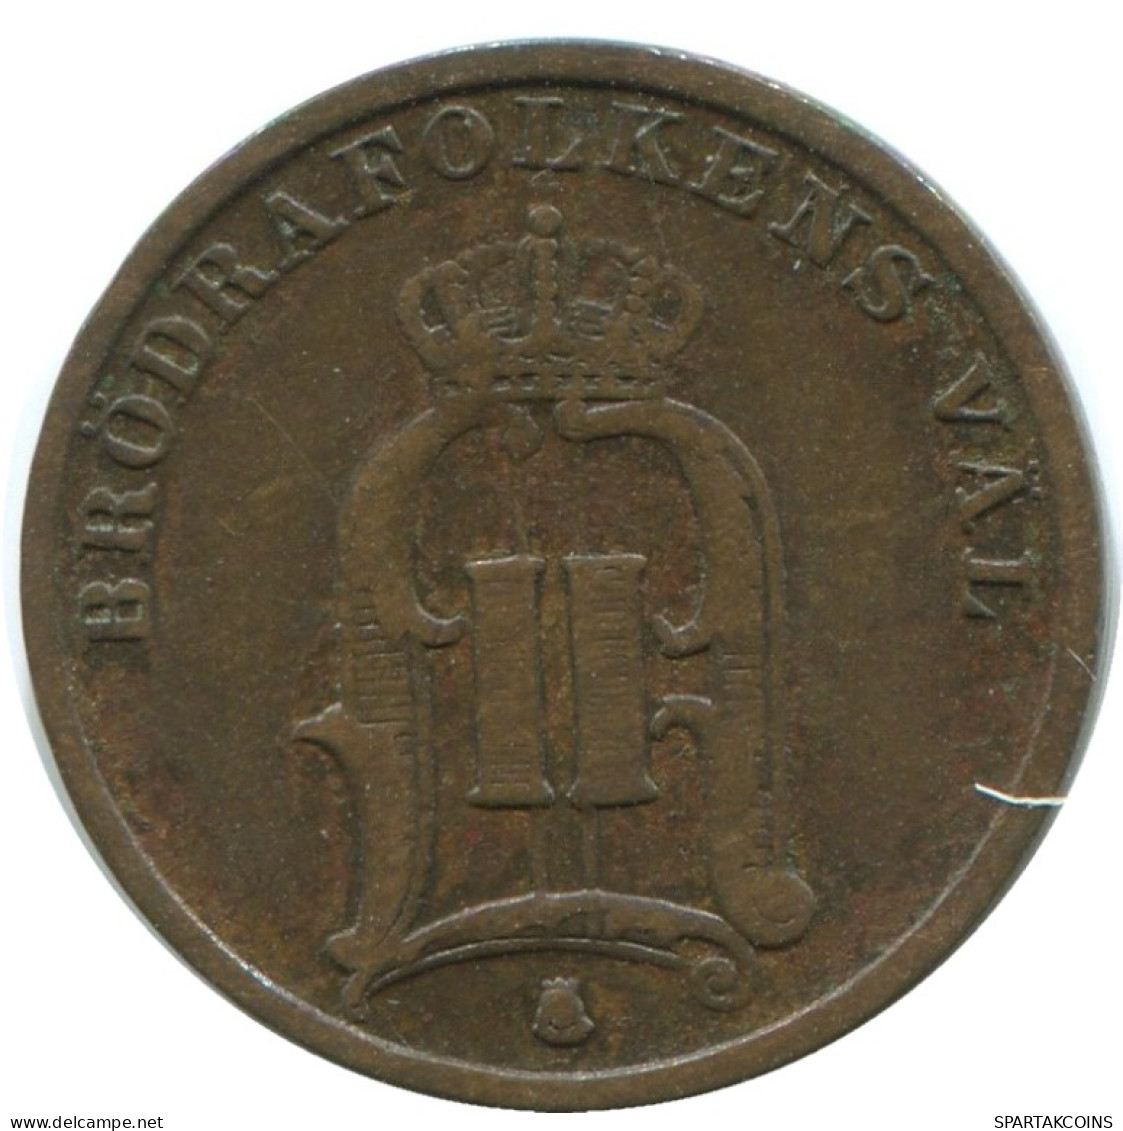 1 ORE 1896 SWEDEN Coin #AD209.2.U.A - Suecia